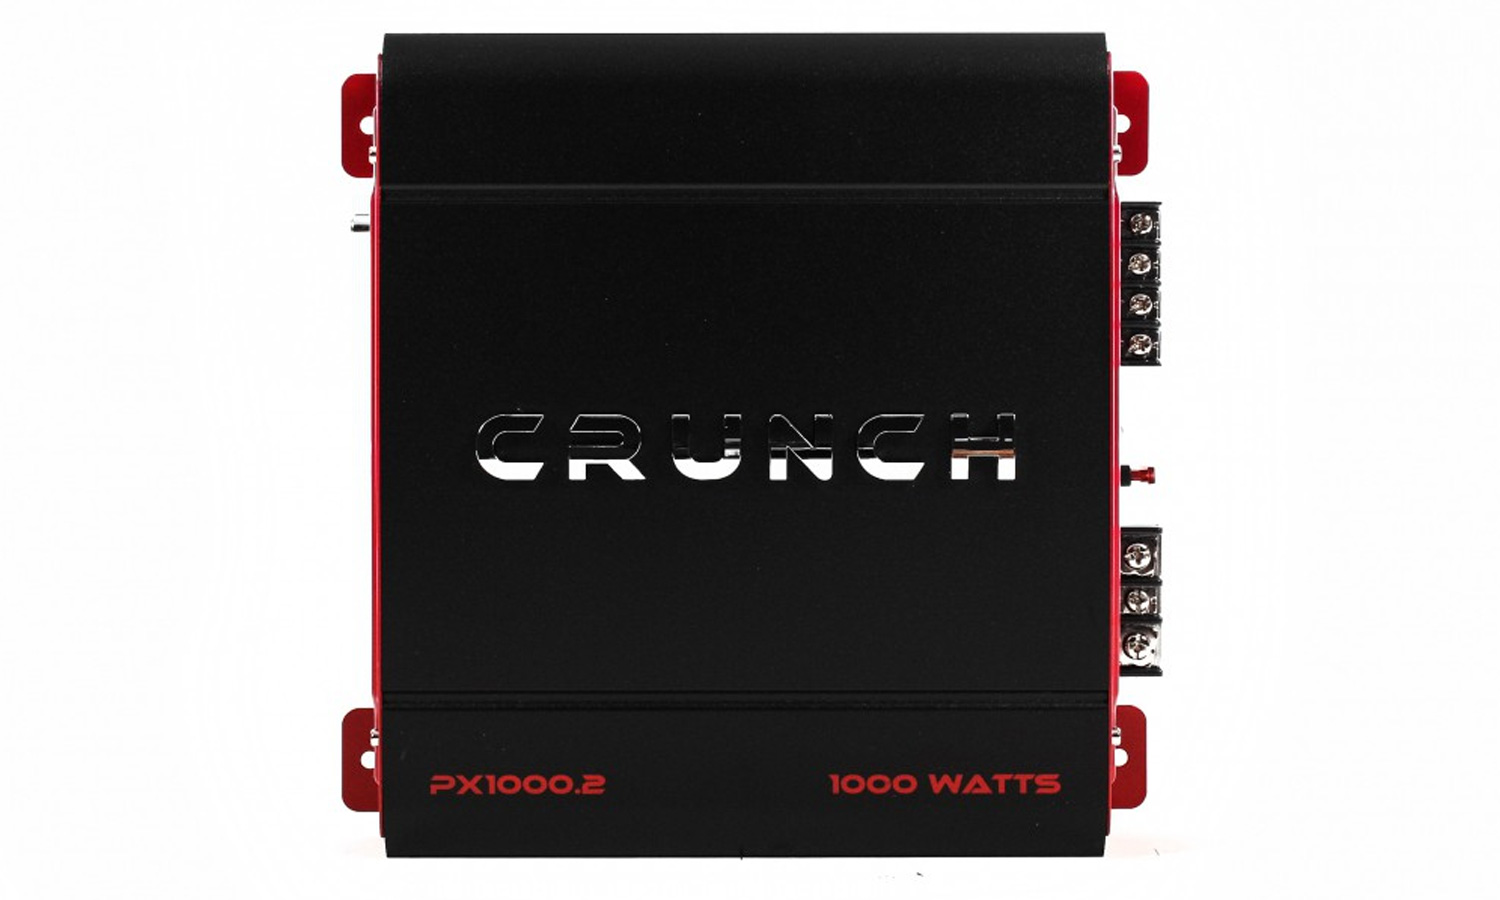 Crunch PX1000.2 POWERX 1000 watt two channel car audio amplifier